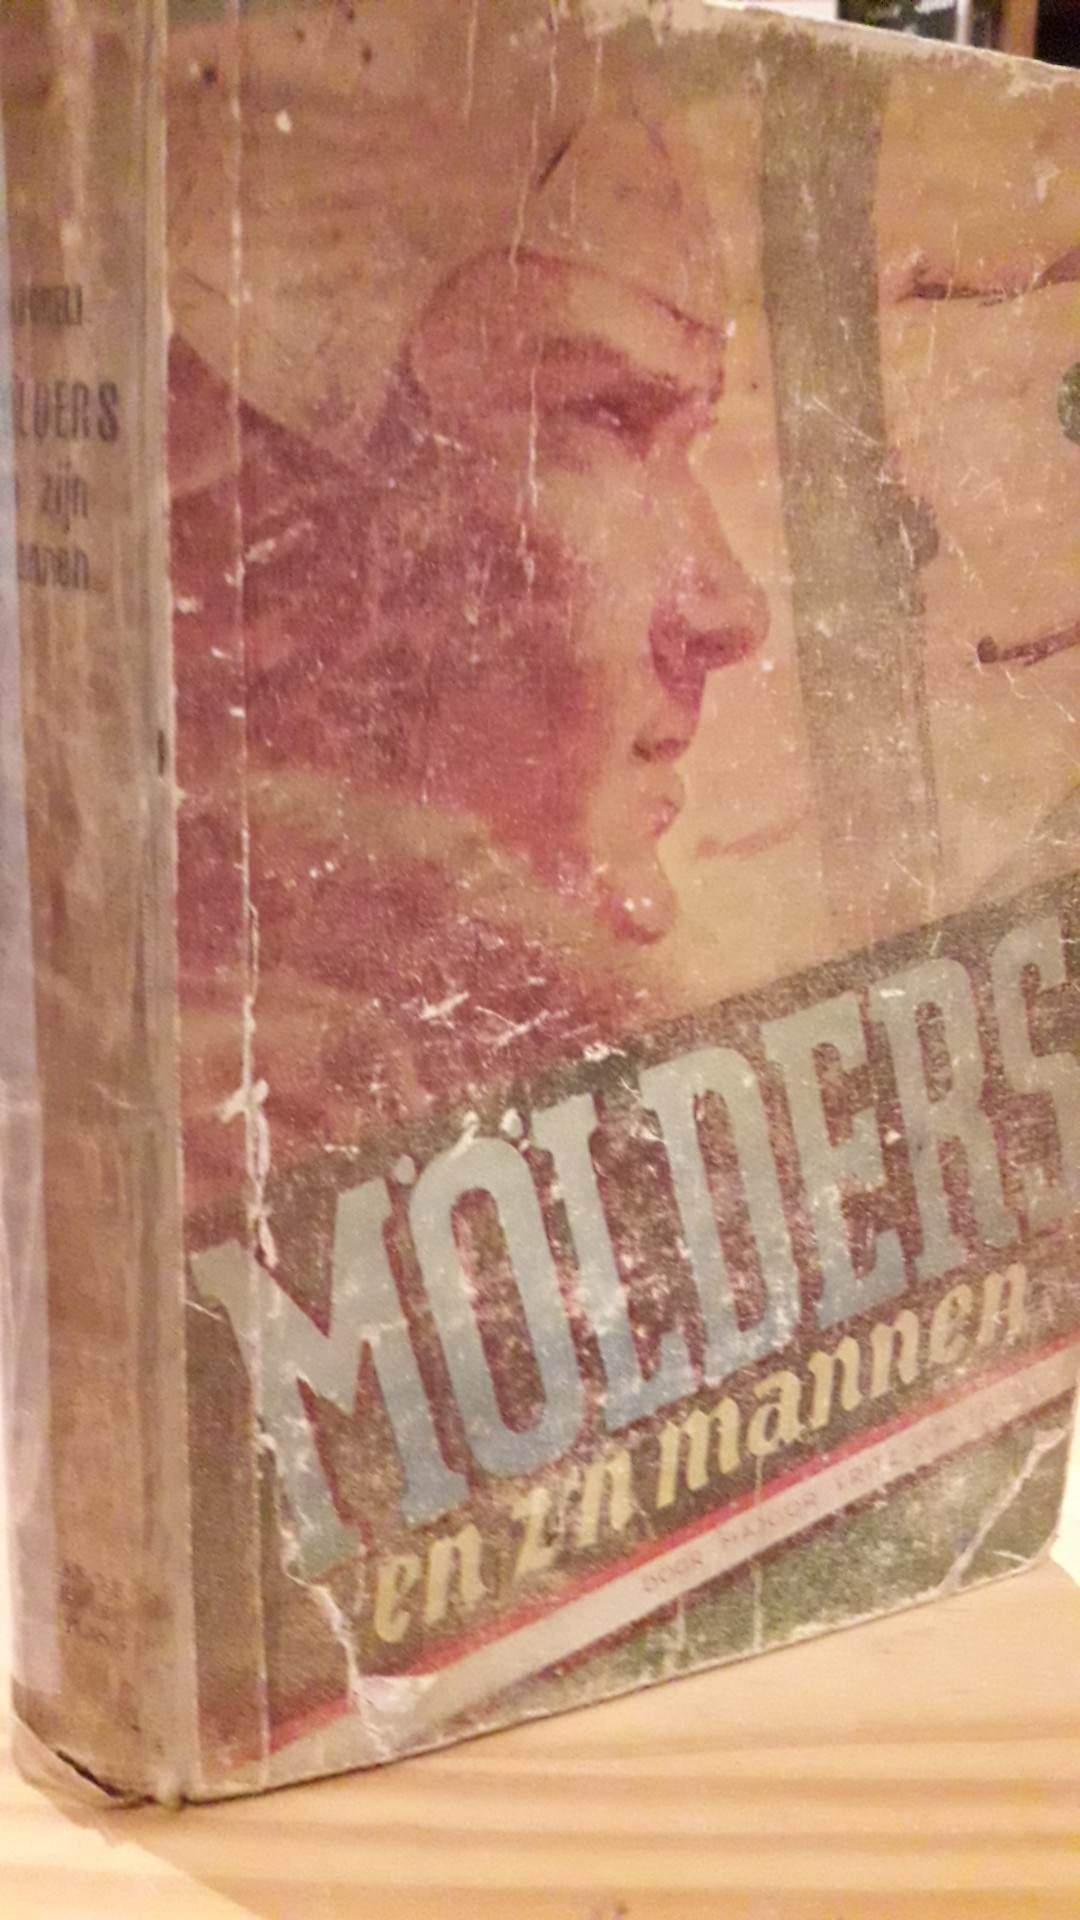 Molders en zijn mannen - 220 blz / WESTLAND 1943 Nederlandse collaboratie uitgeverij